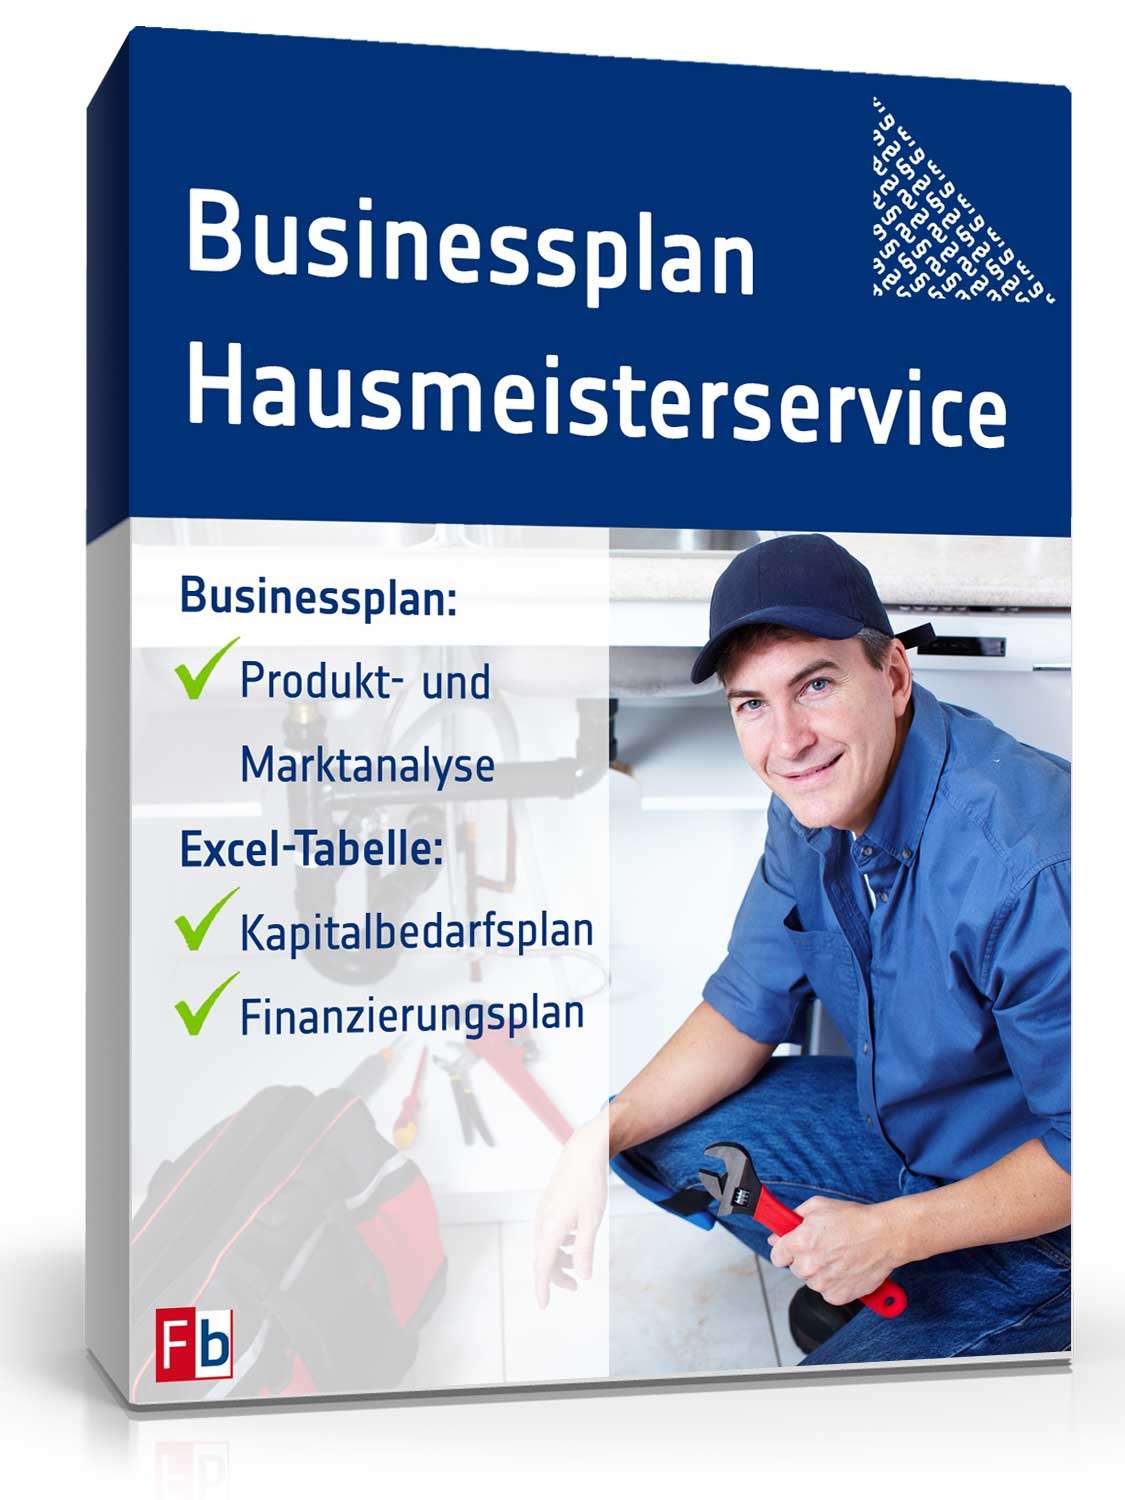 Hauptbild des Produkts: Businessplan Hausmeisterservice